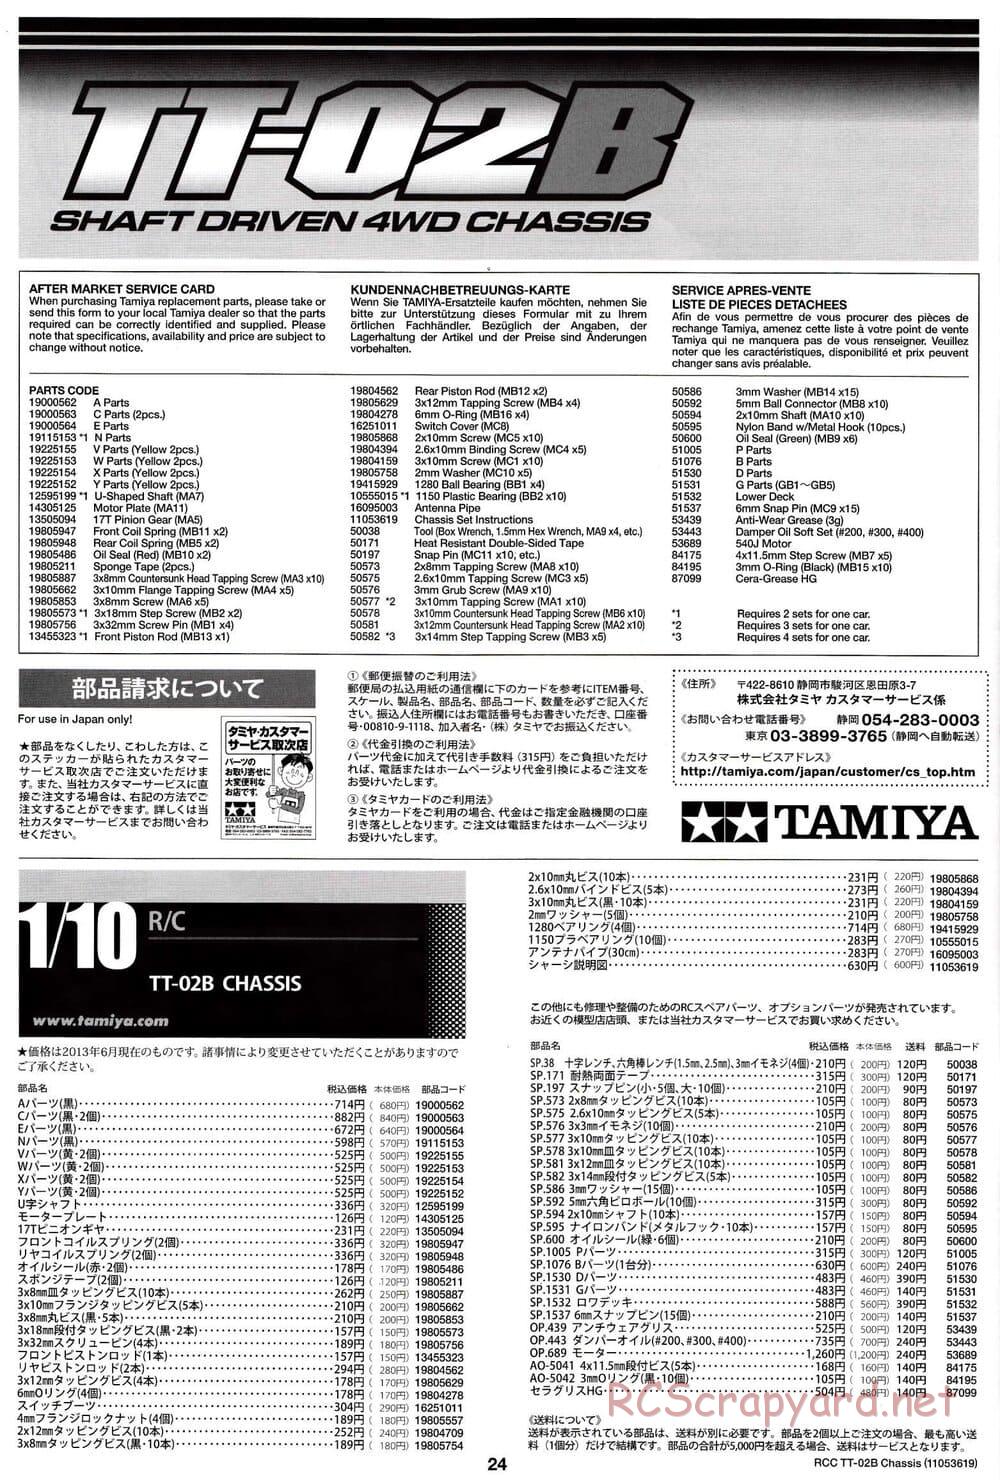 Tamiya - TT-02B Chassis - Manual - Page 28